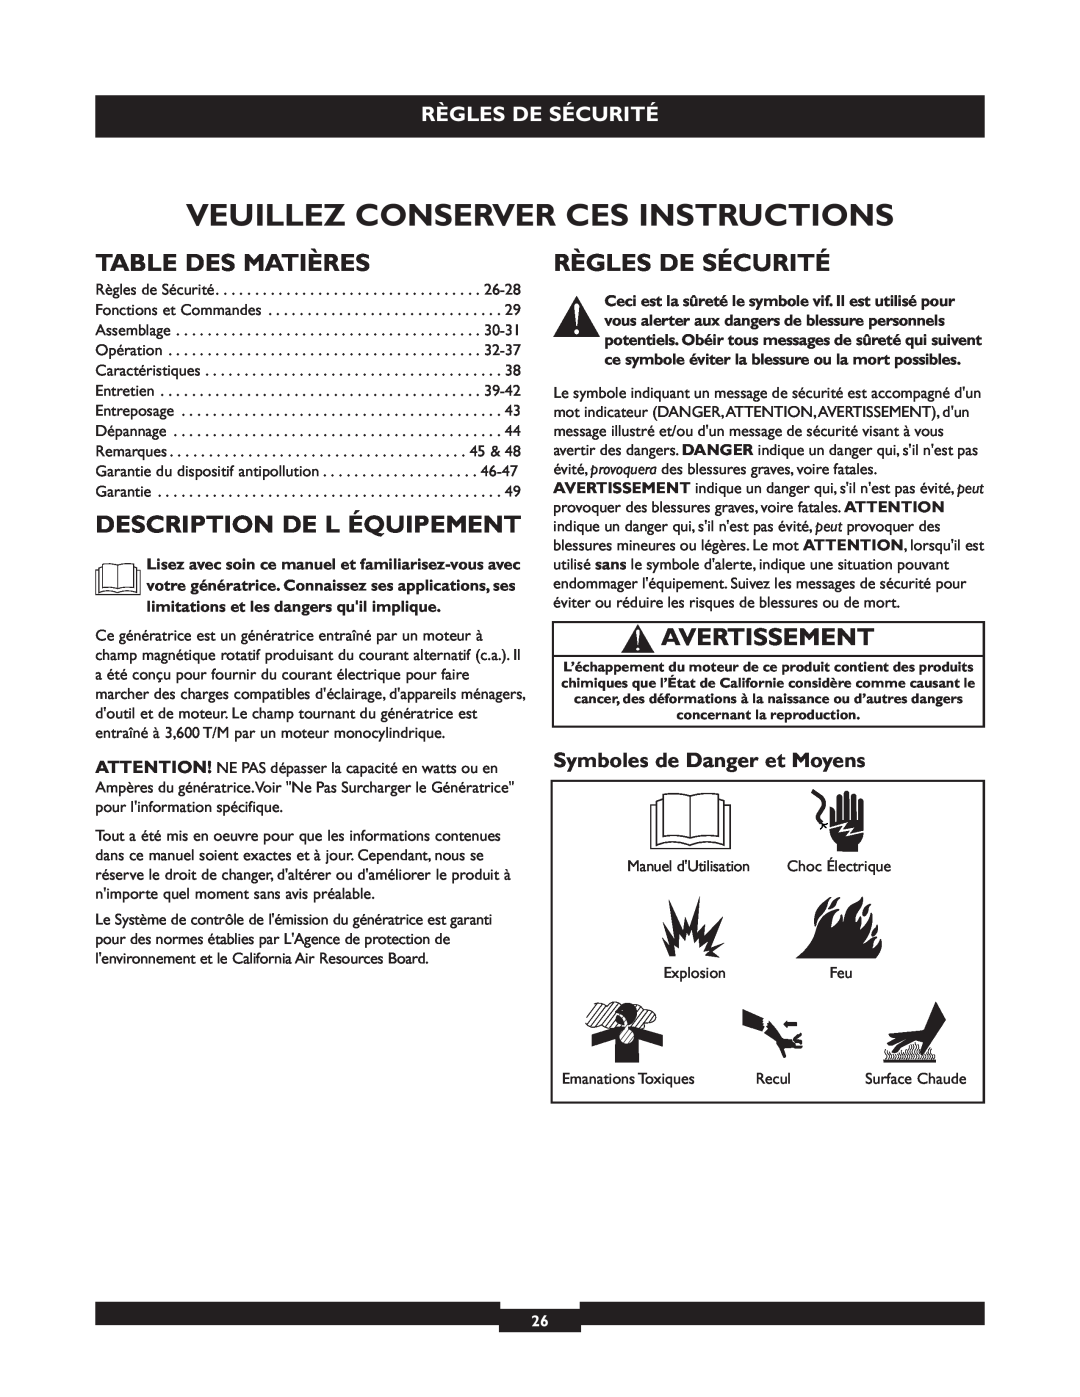 Briggs & Stratton 30236 Veuillez Conserver Ces Instructions, Table Des Matières, Description De L Équipement 